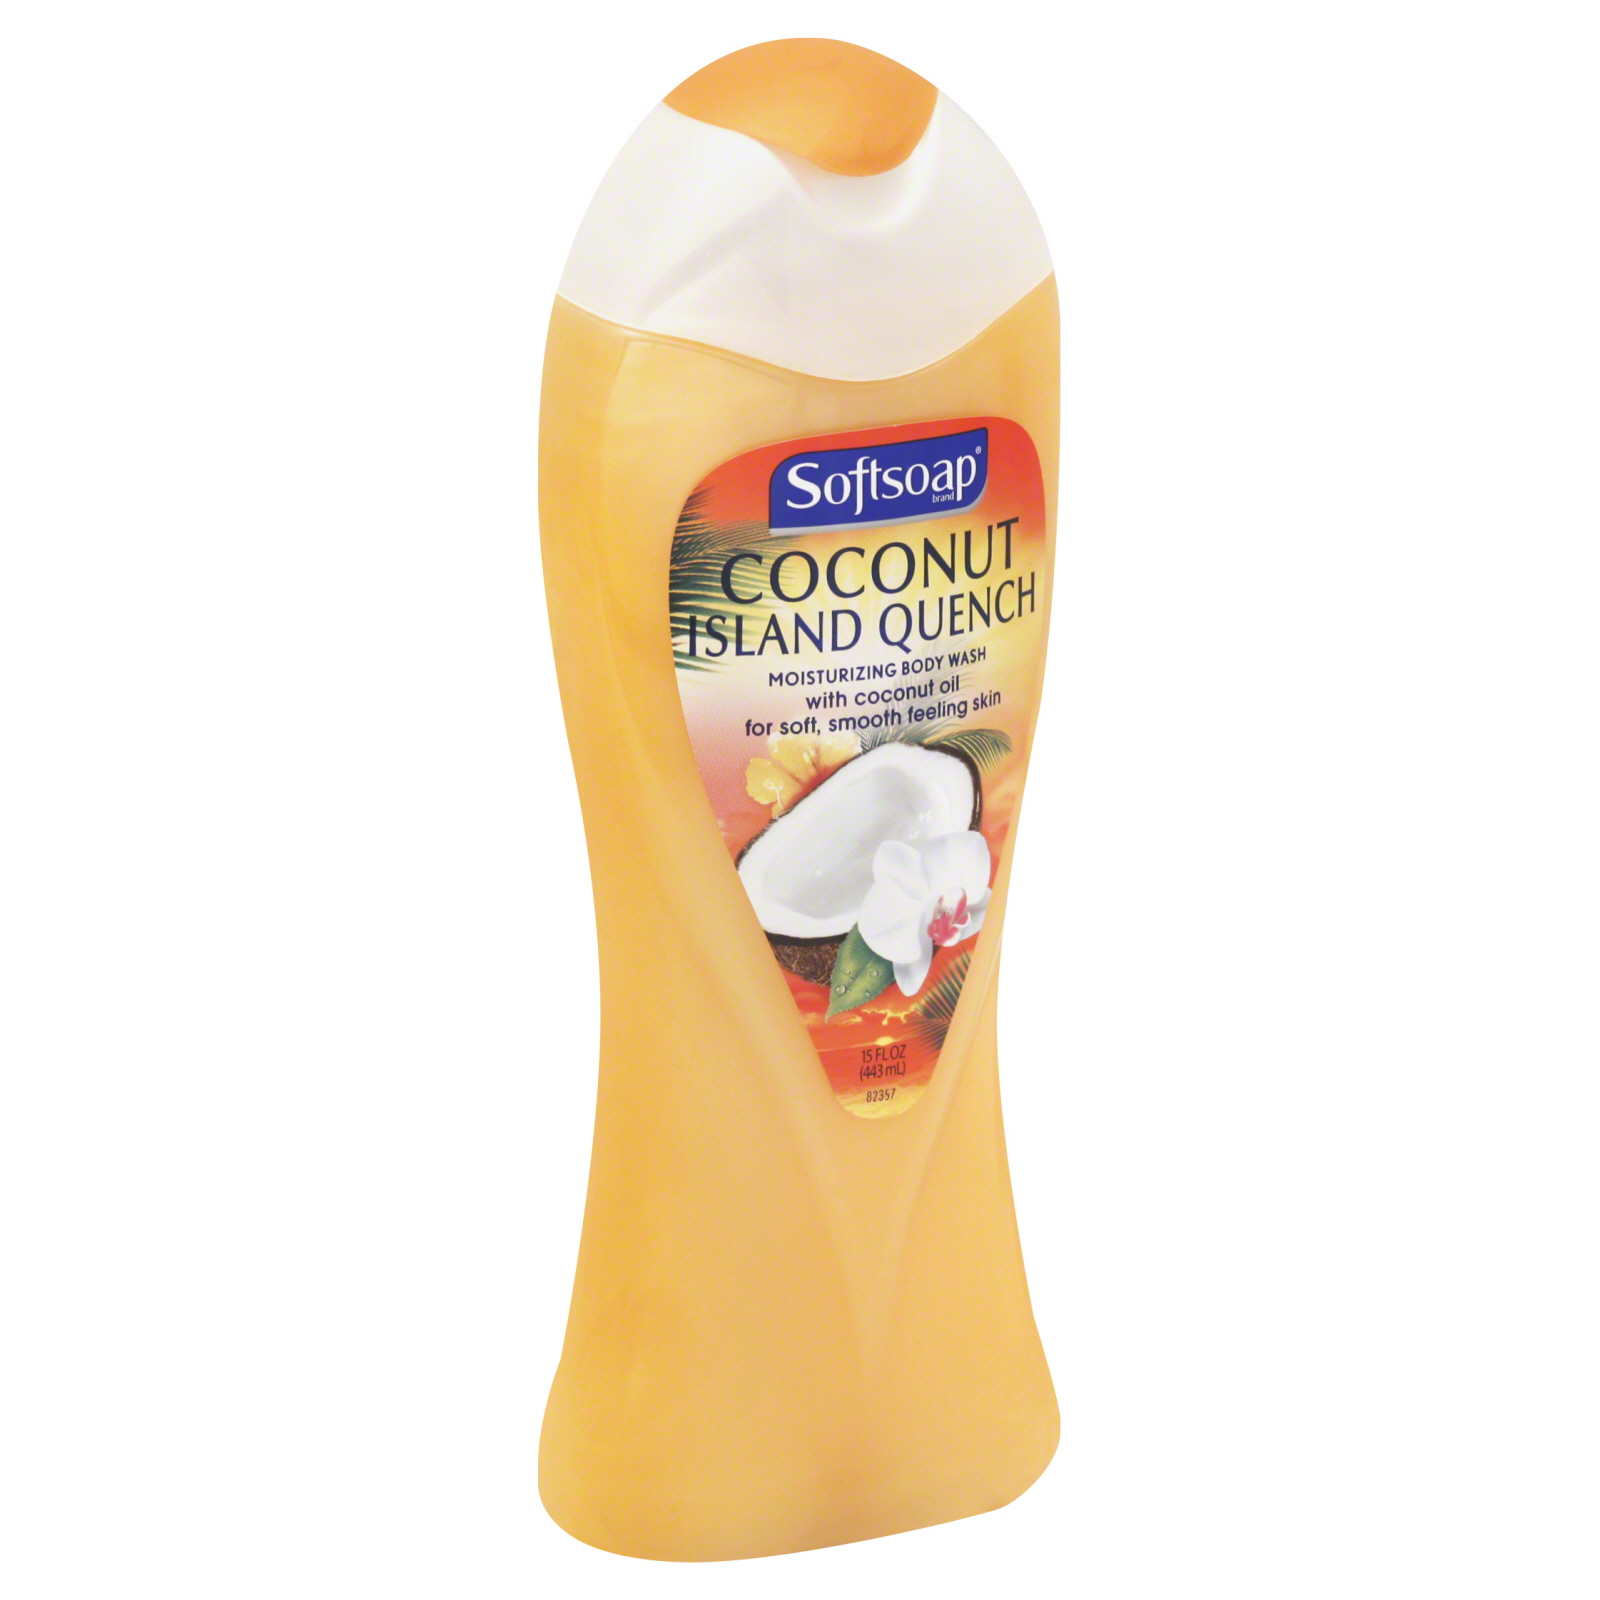 Softsoap Body Wash, Moisturizing, Coconut Island Quench, 15 fl oz (443 ml)